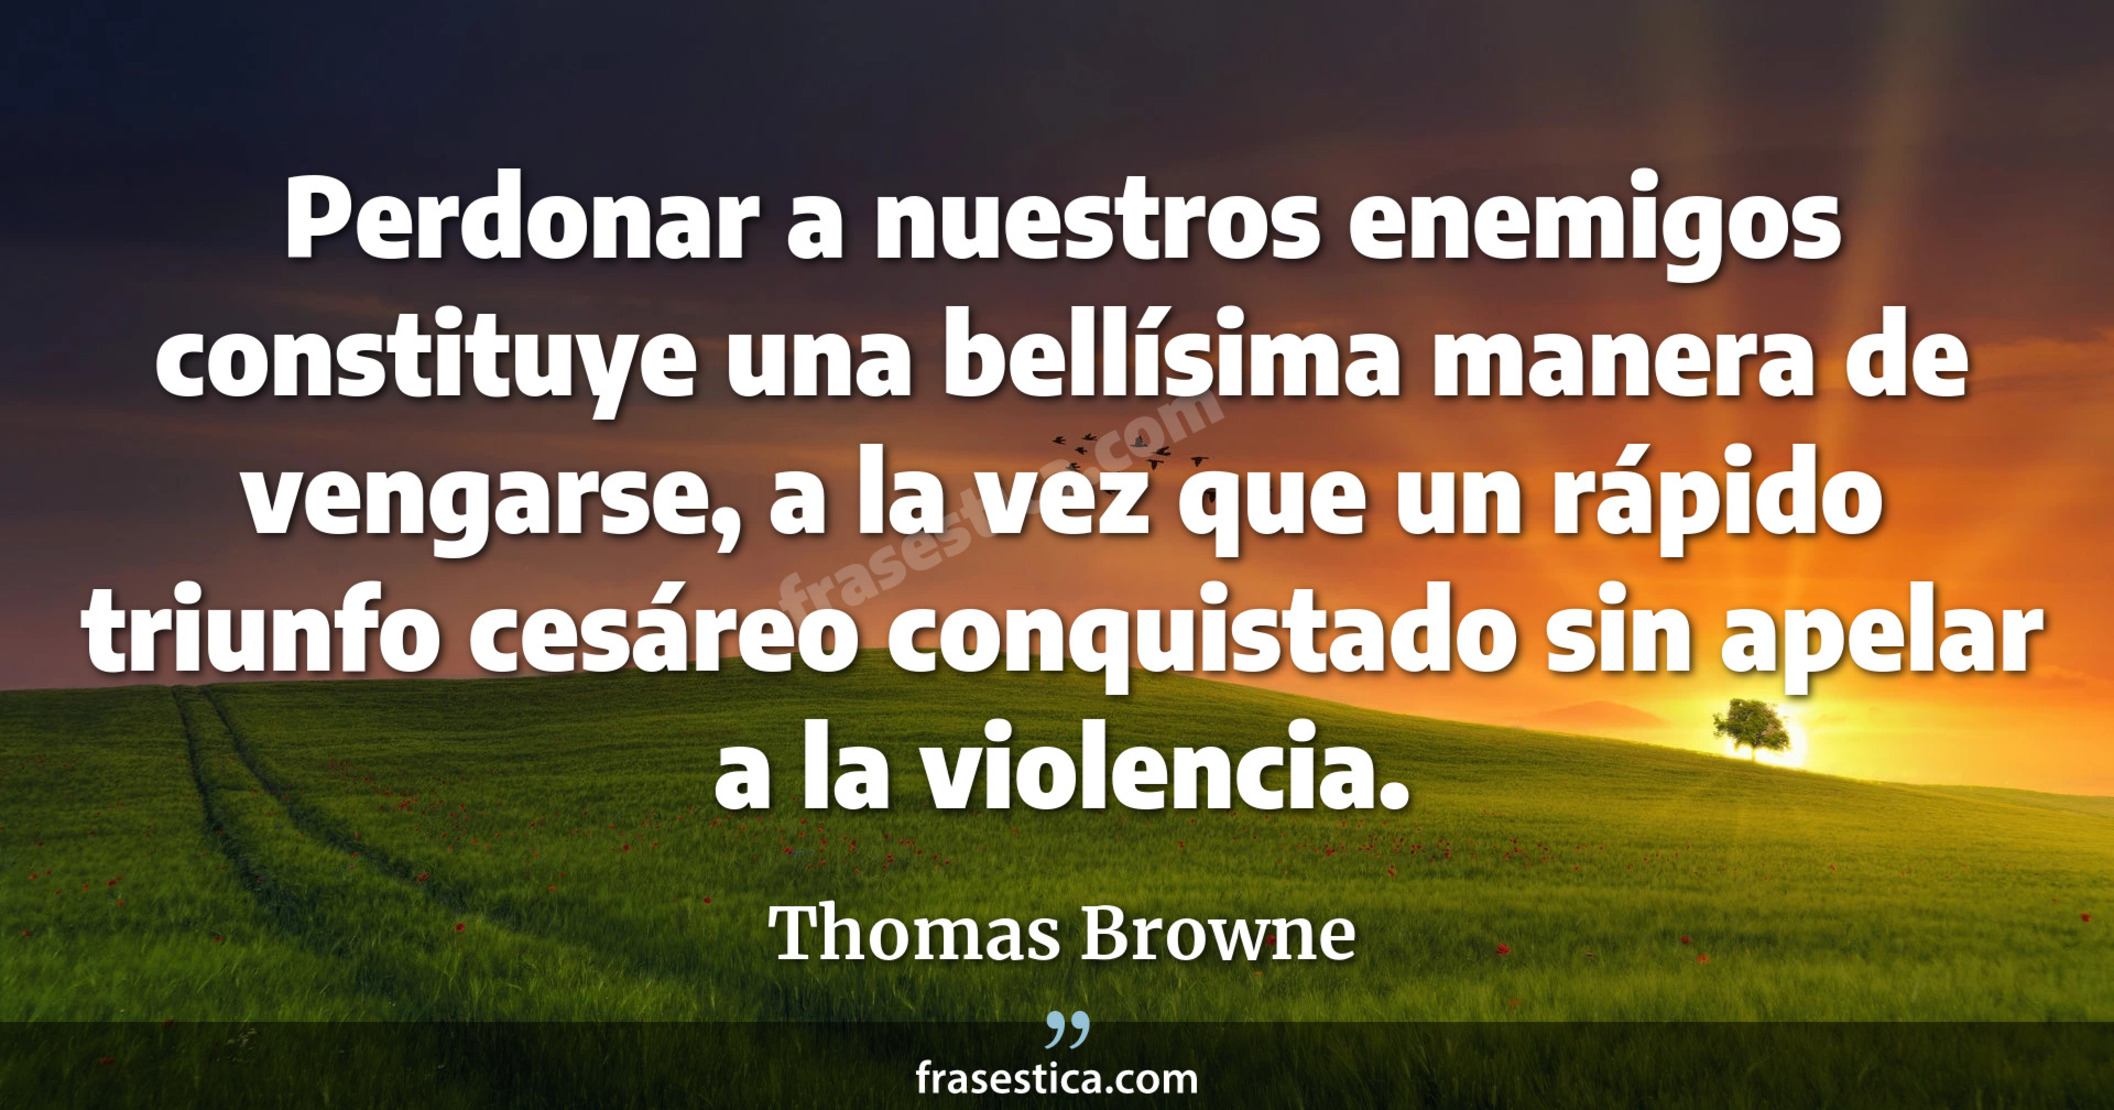 Perdonar a nuestros enemigos constituye una bellísima manera de vengarse, a la vez que un rápido triunfo cesáreo conquistado sin apelar a la violencia. - Thomas Browne